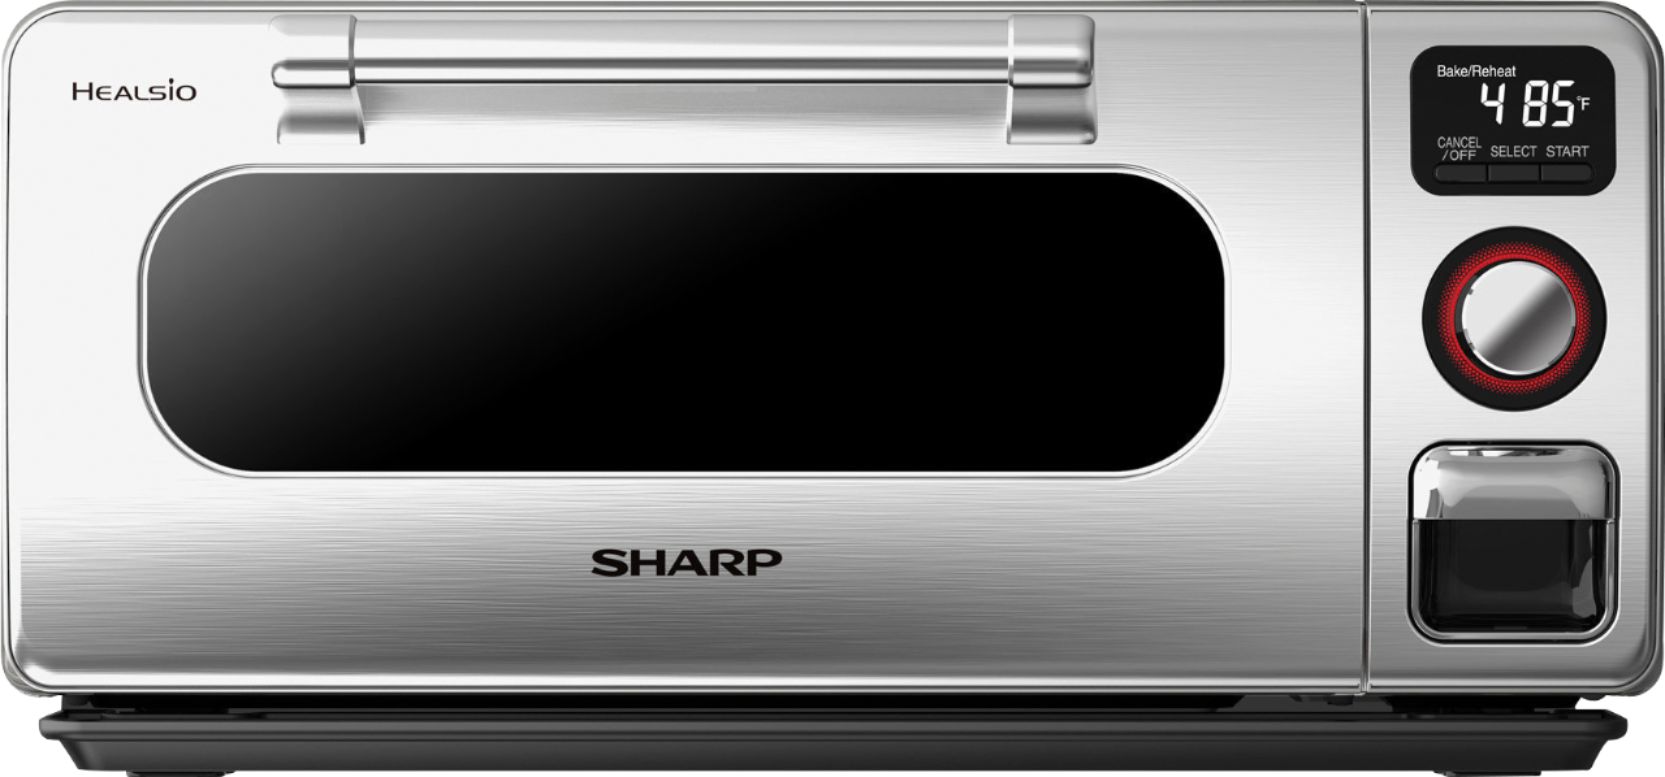 Sharp SuperSteam Steam Oven Stainless Steel  - Best Buy